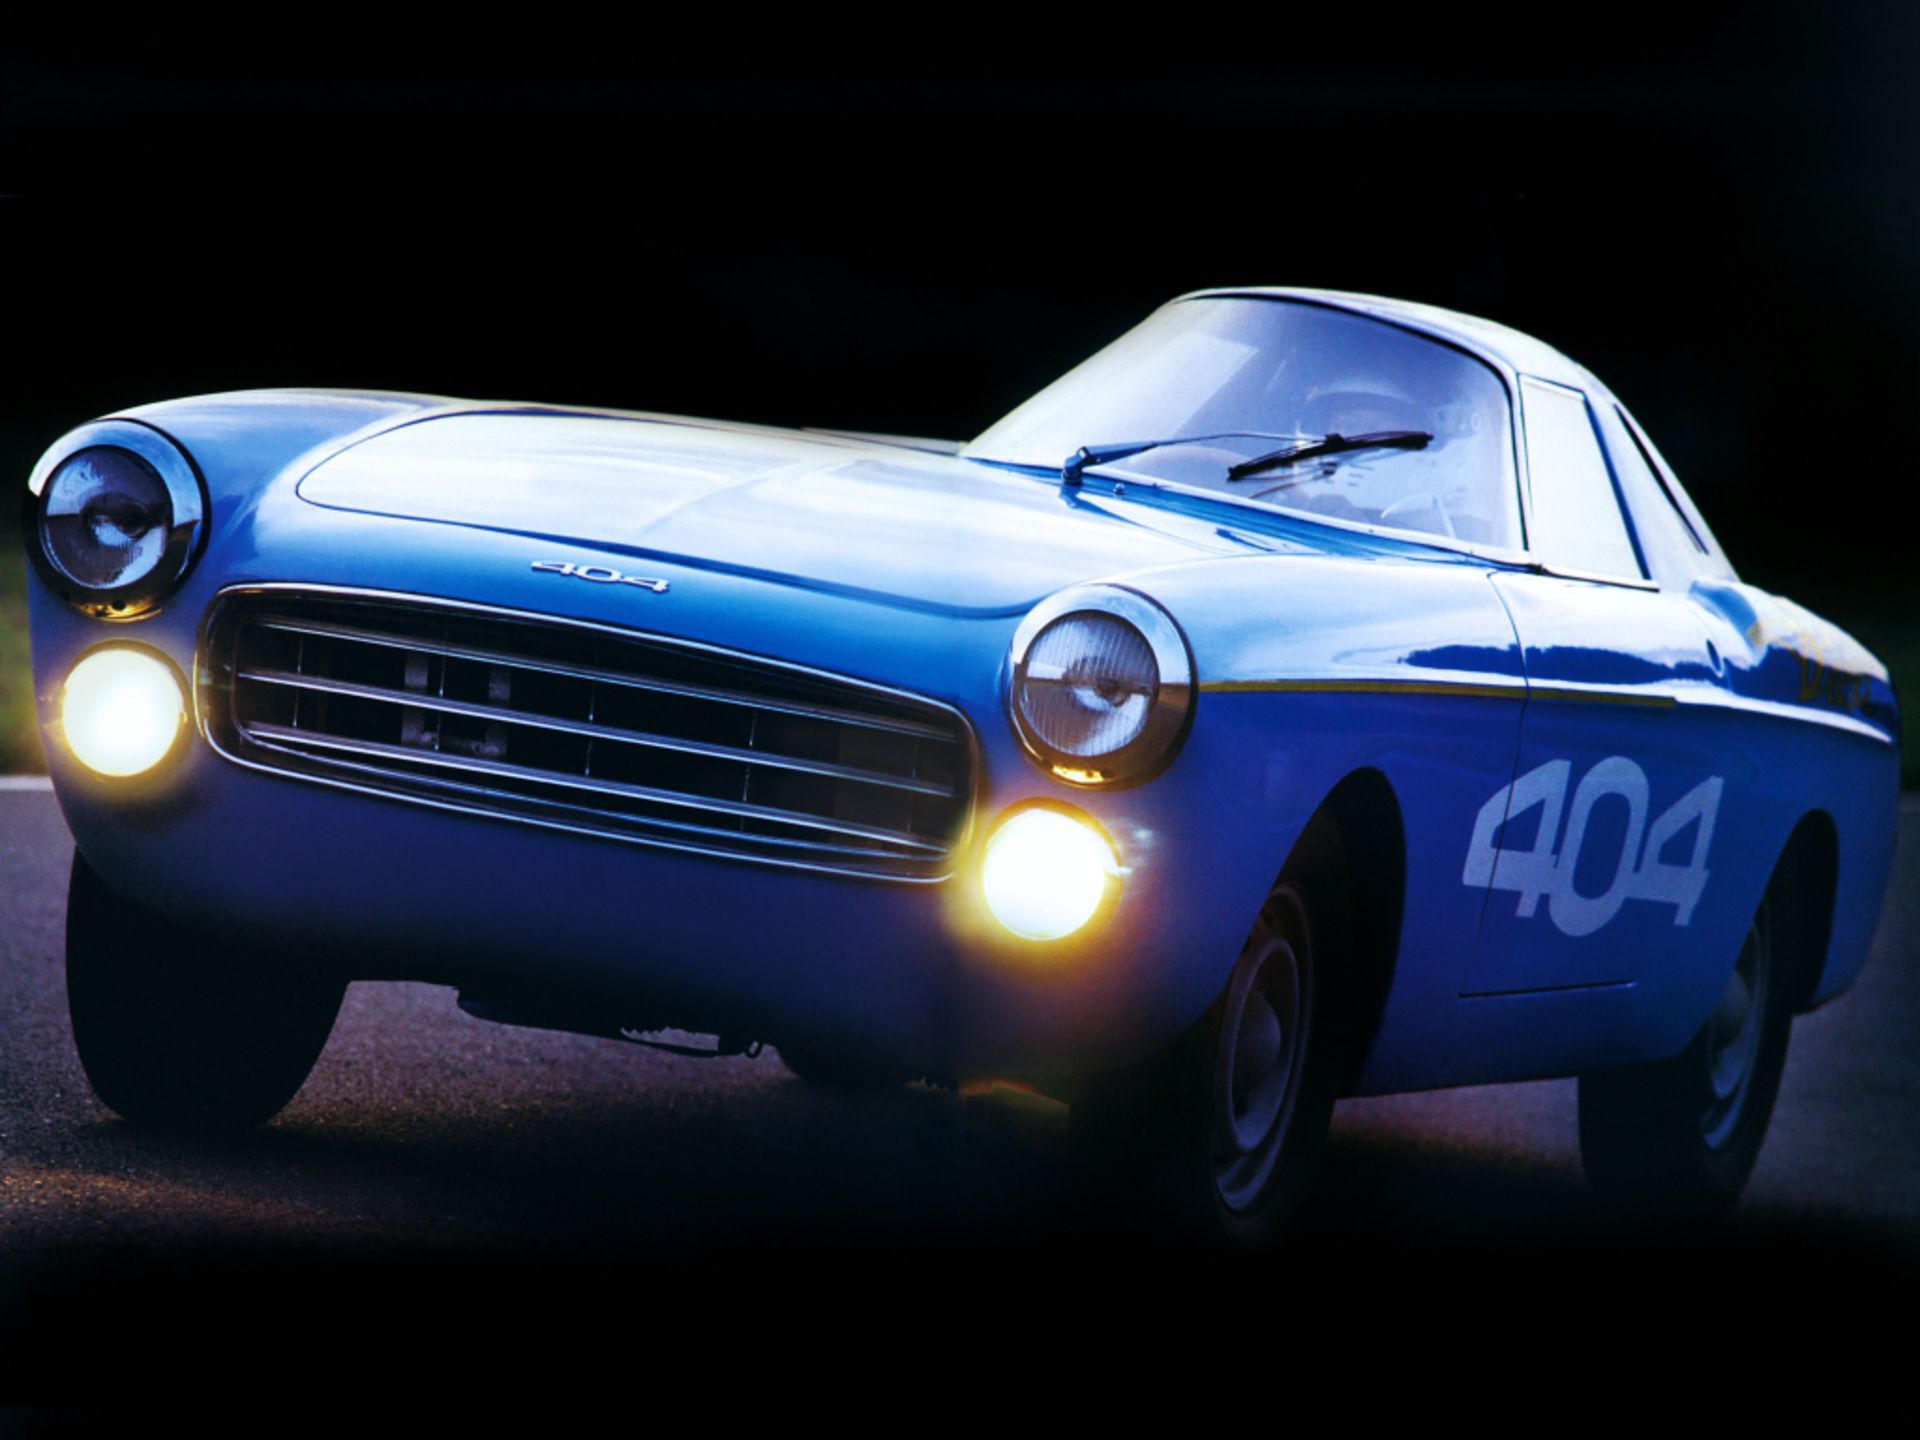 Peugeot 404 Diesel Record Car